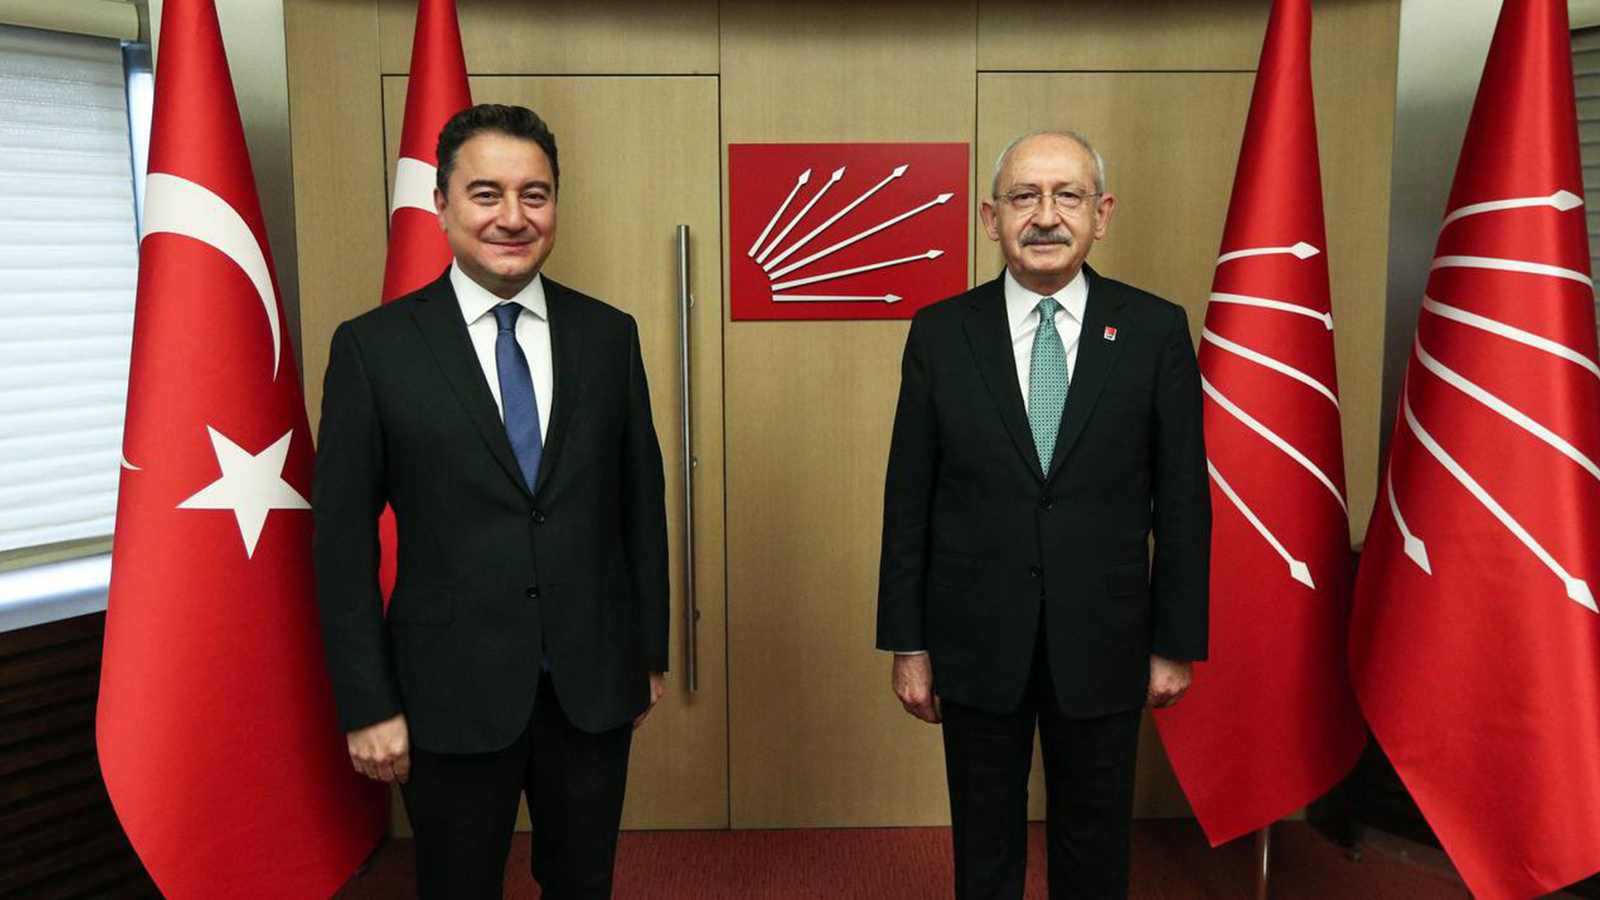 Kılıçdaroğlu ve Babacan'dan ortak açıklama: Güçlendirilmiş parlamenter sistem için diyalog ve istişare süreci başlatıyoruz